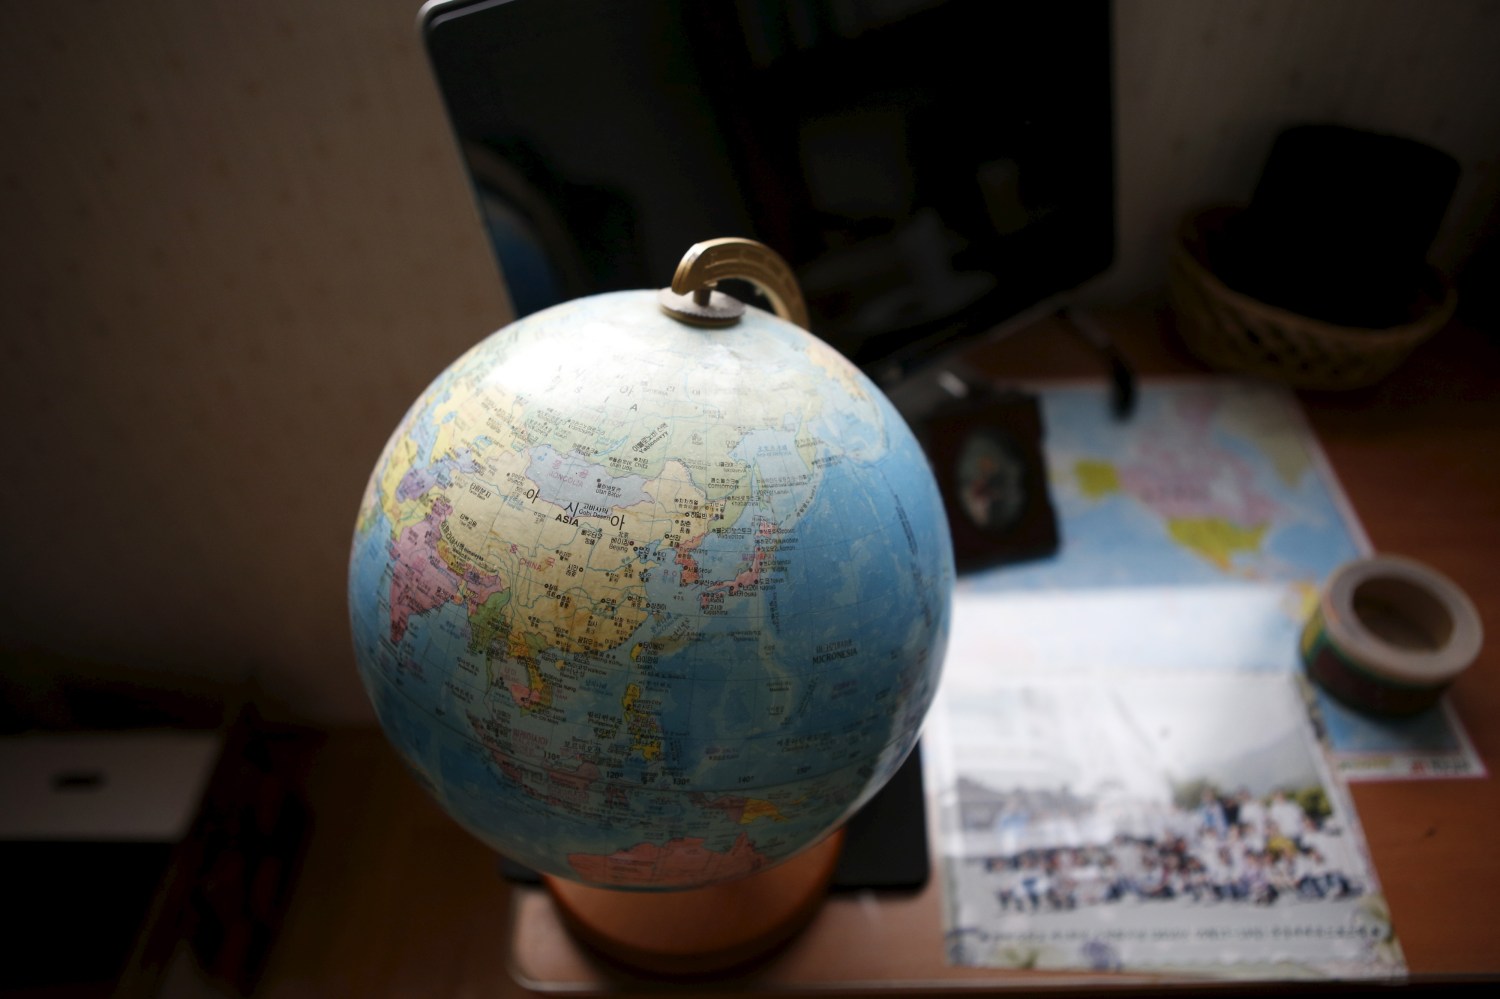 A globe is seen on a desk.